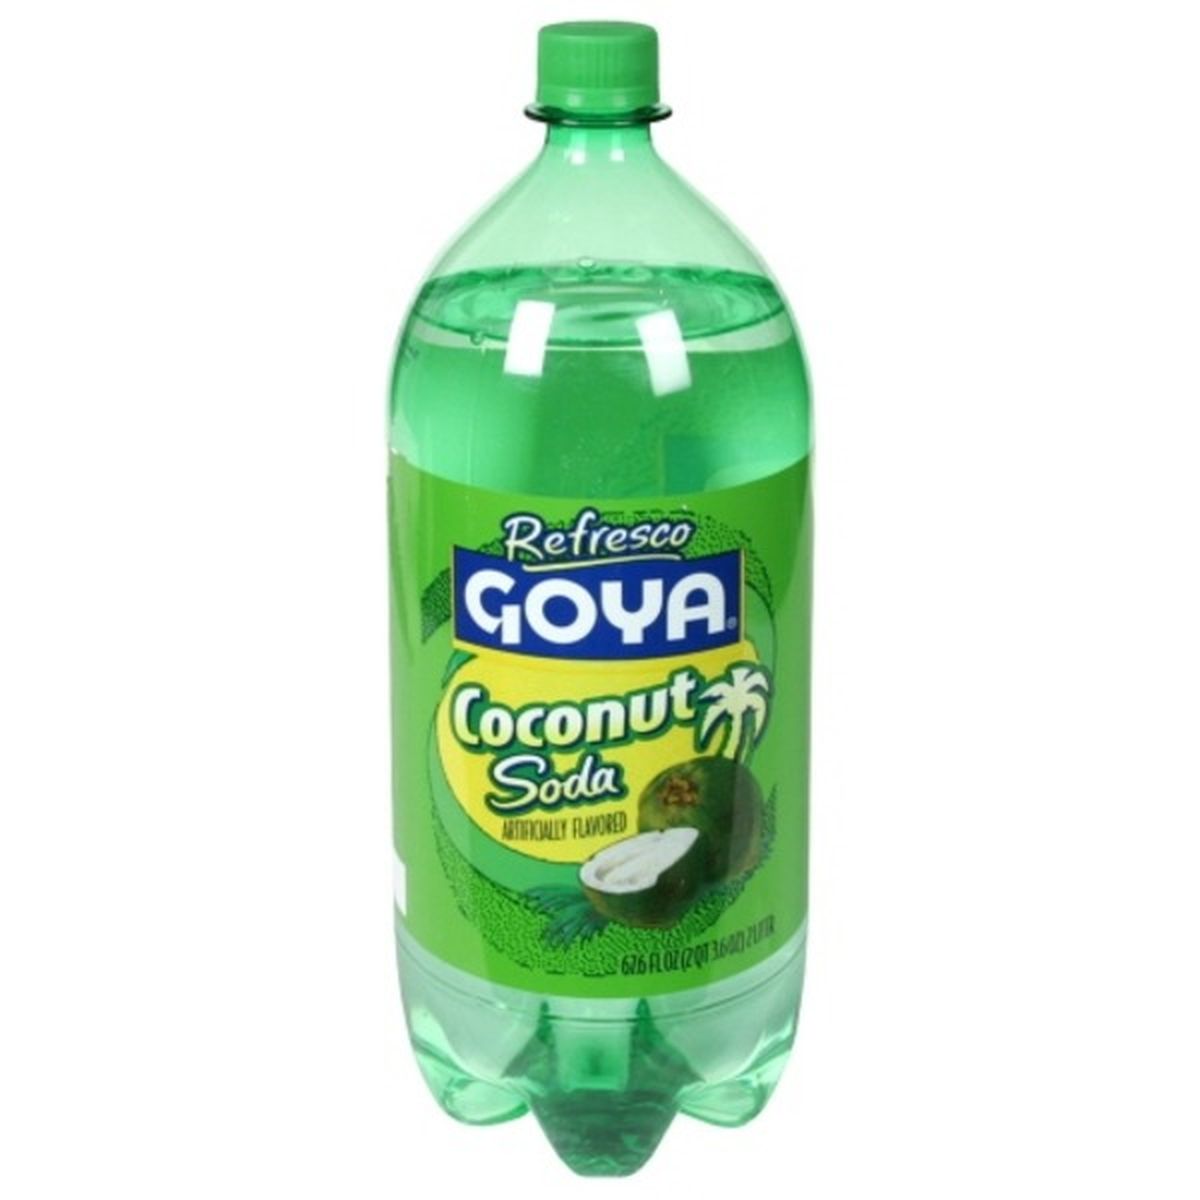 Calories in Goya Coconut Soda